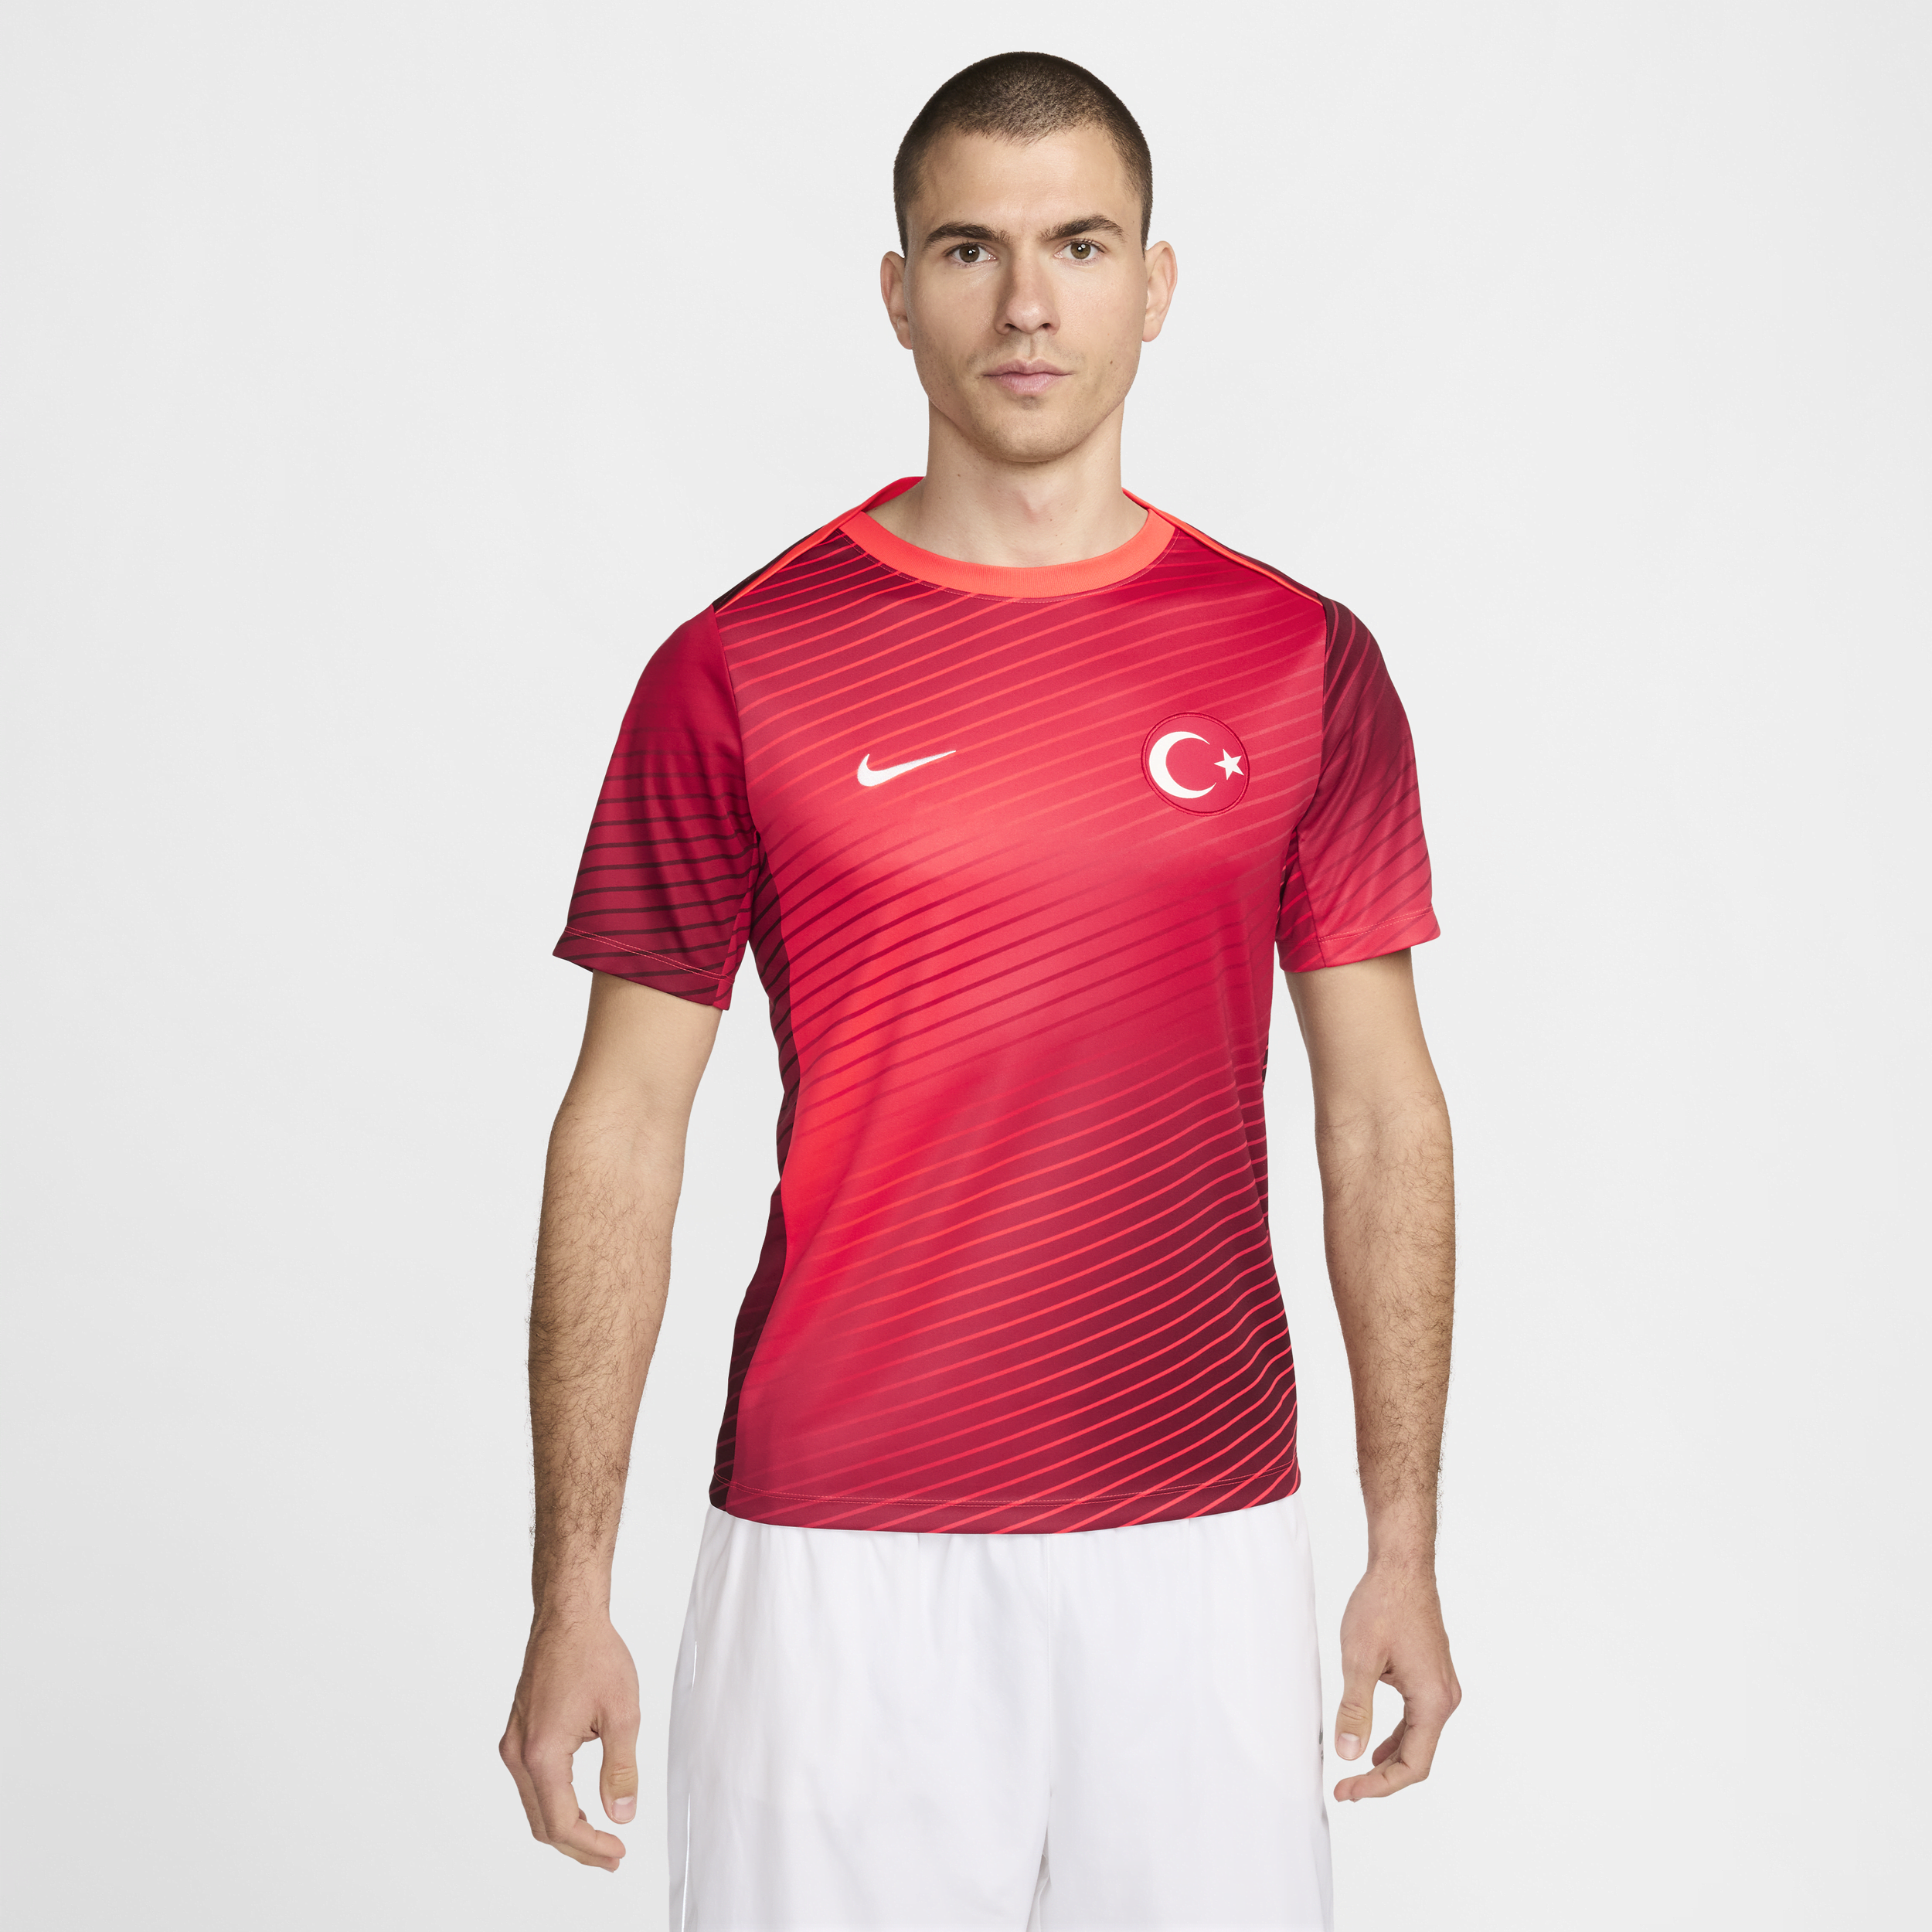 Maglia da calcio a manica corta Nike Dri-FIT Turchia Academy Pro – Uomo - Rosso